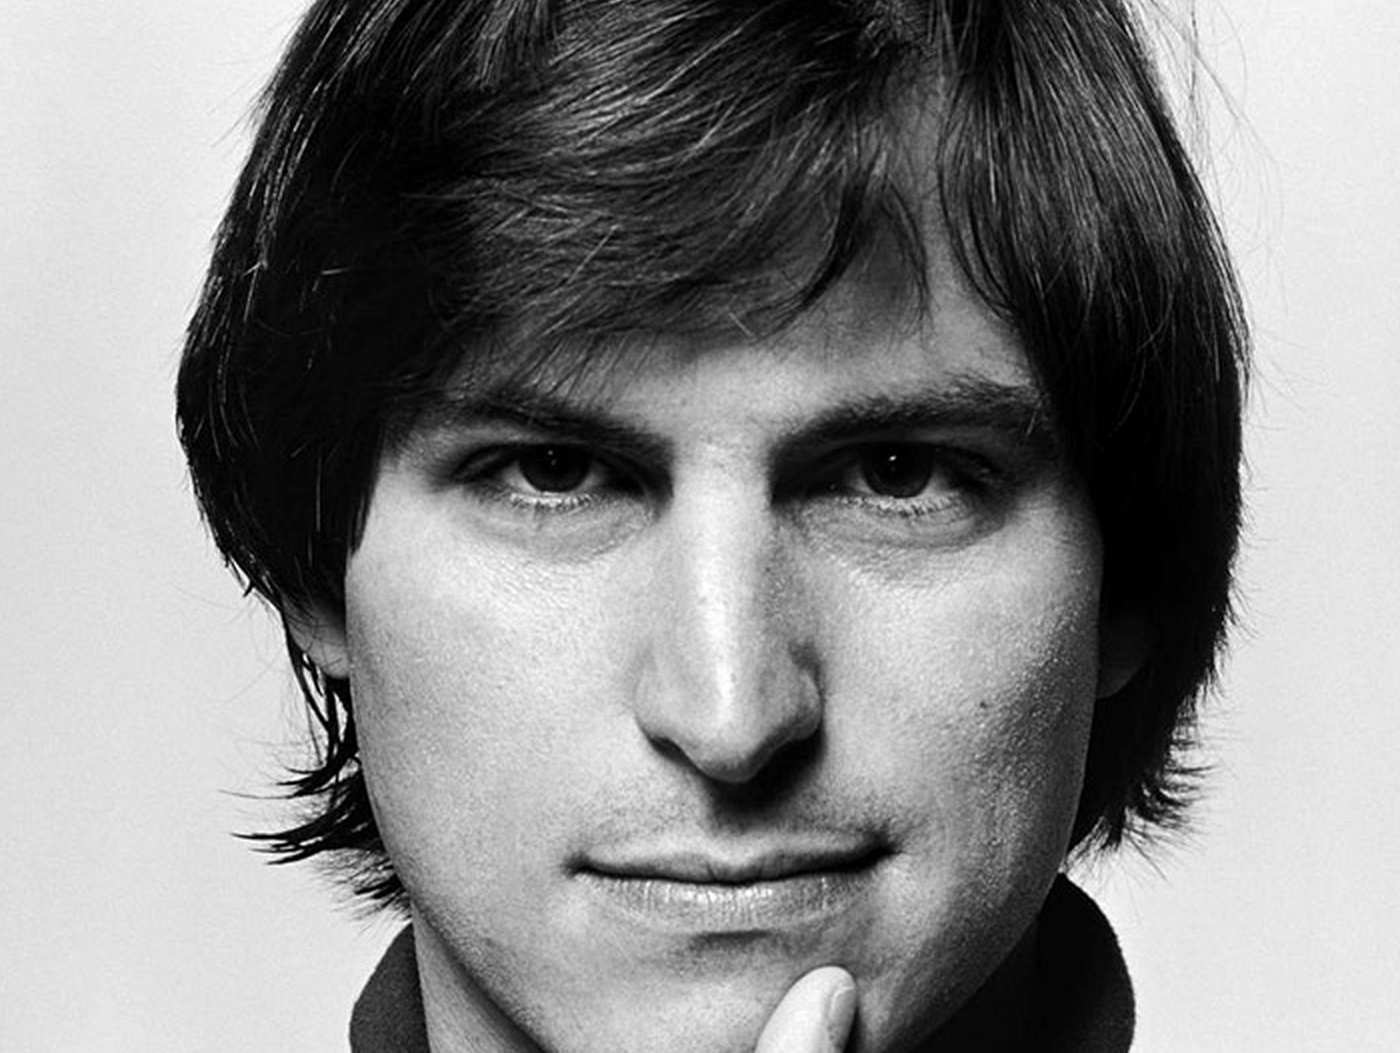 Steve Jobs, the co-founder of Apple.